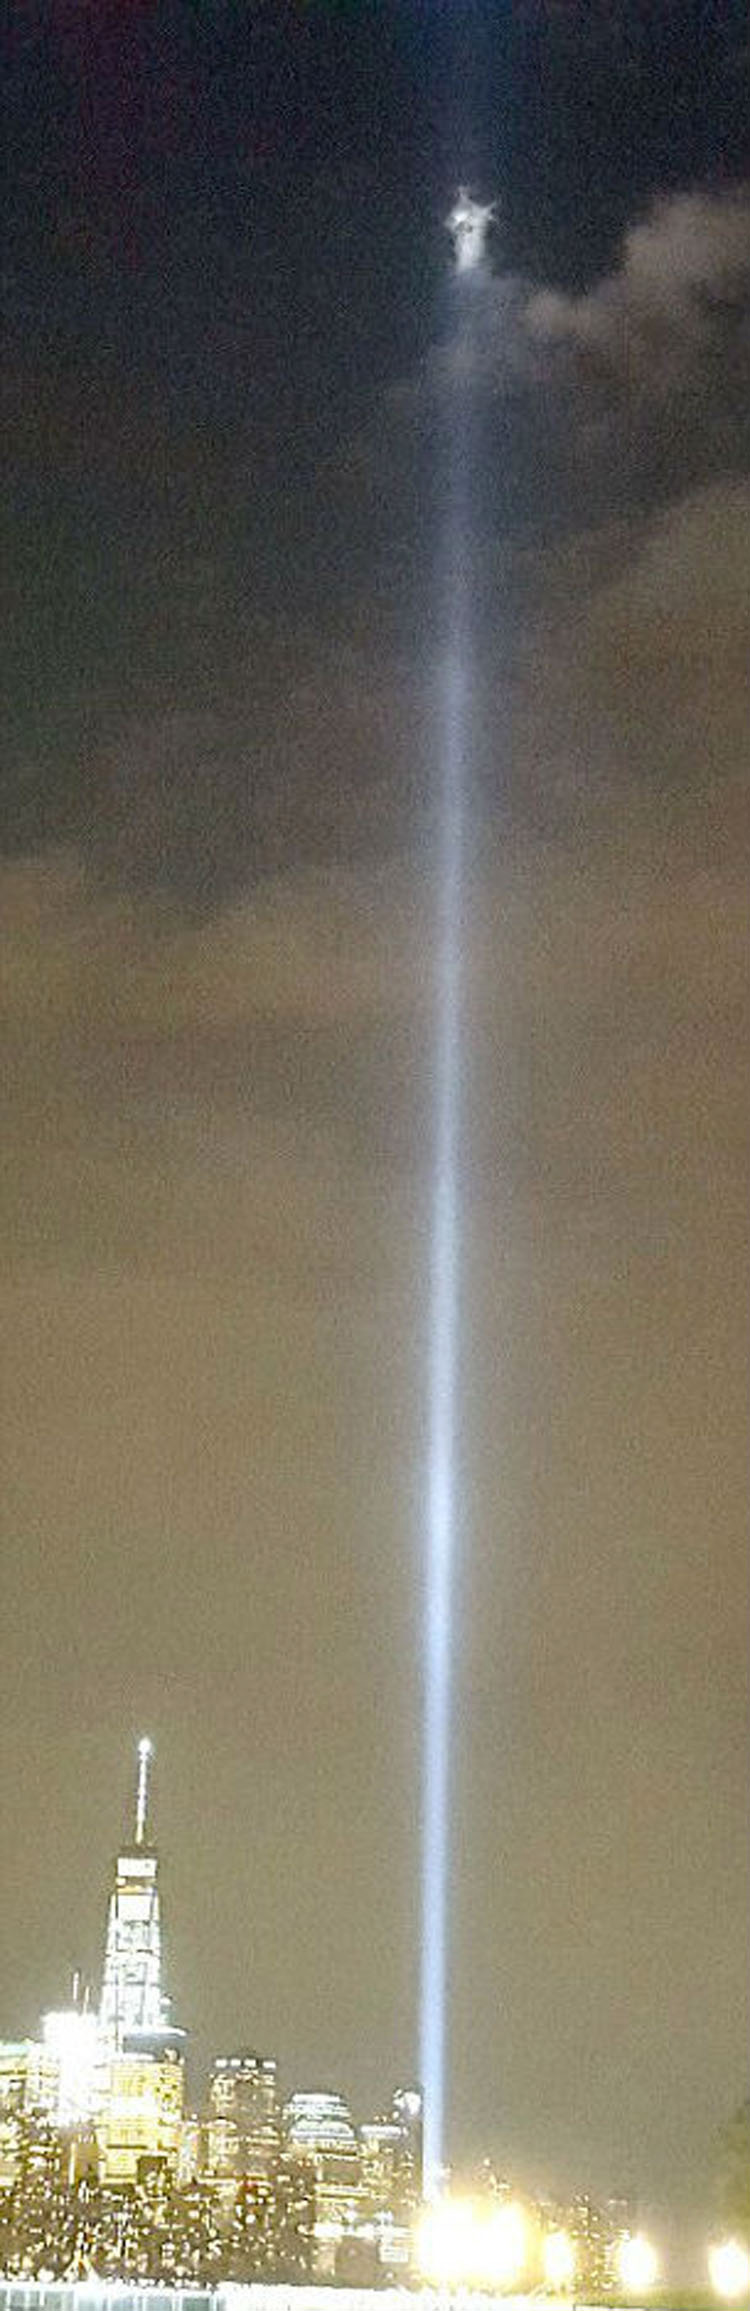 Alguien vio ESTO sobre el lugar del homenaje al World Trade Center el pasado 9 de septiembre